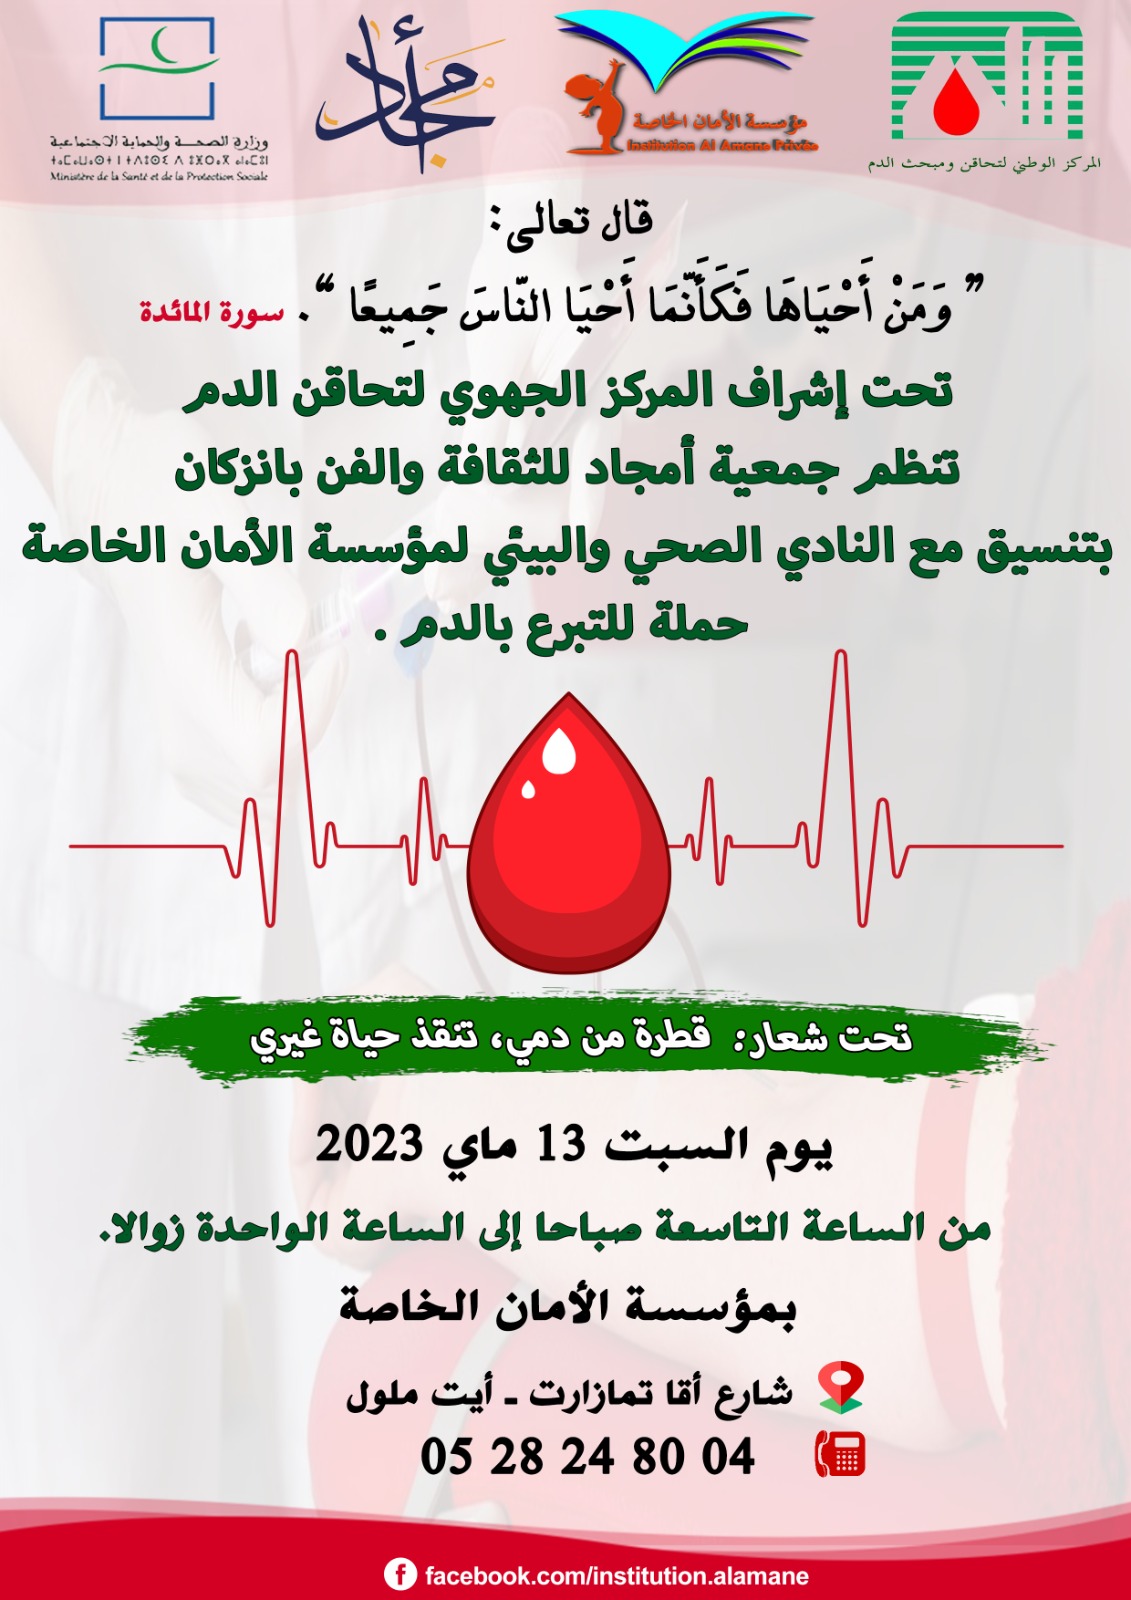 مؤسسة الأمان الخاصة بايت ملول تحتضن حملة للتبرع بالدم